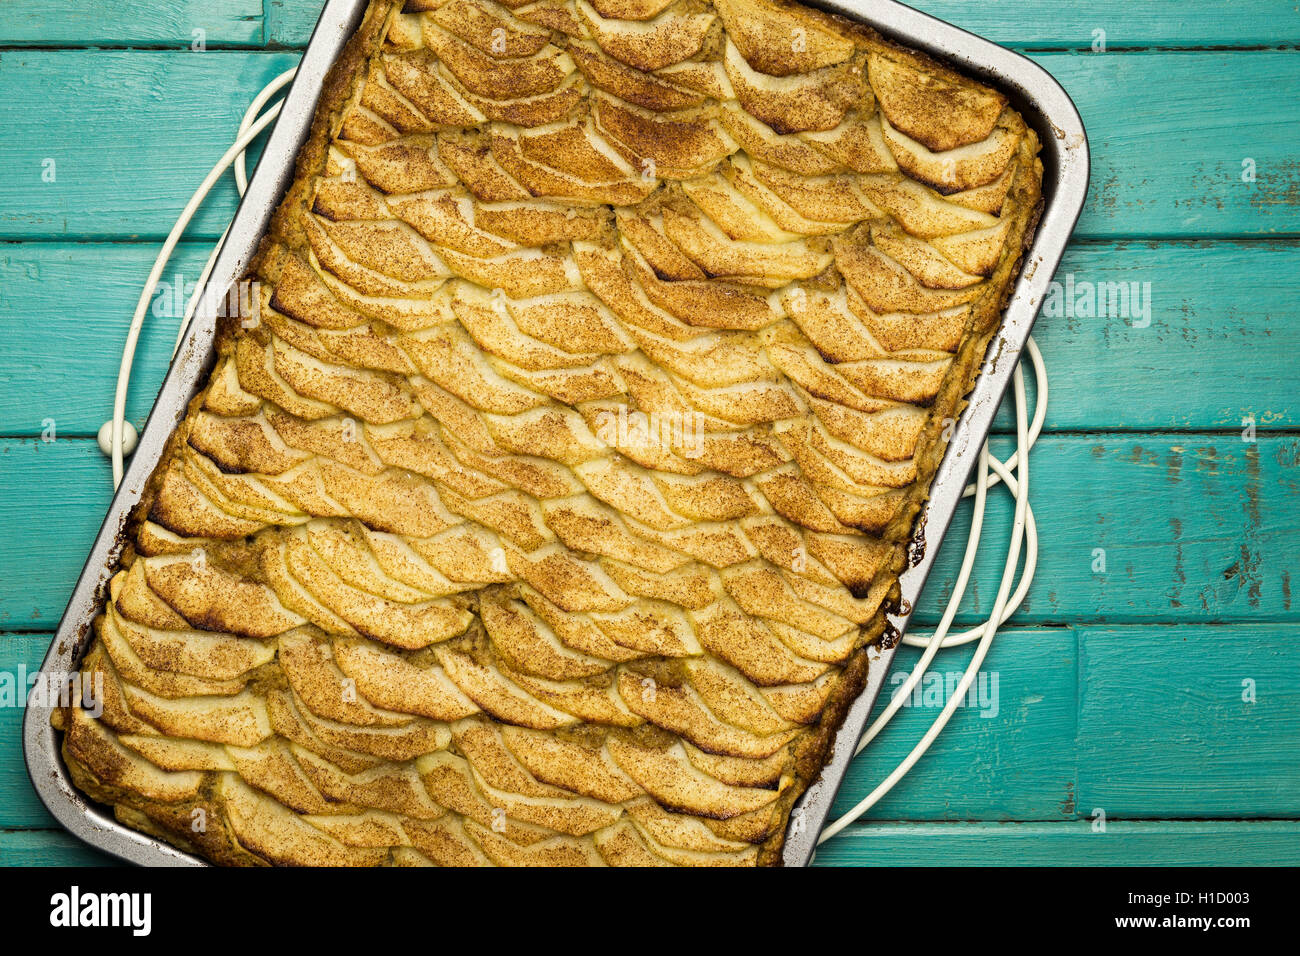 Apple cinnamon tart with hazelnut frangipane in baking tray on turquoise background Stock Photo